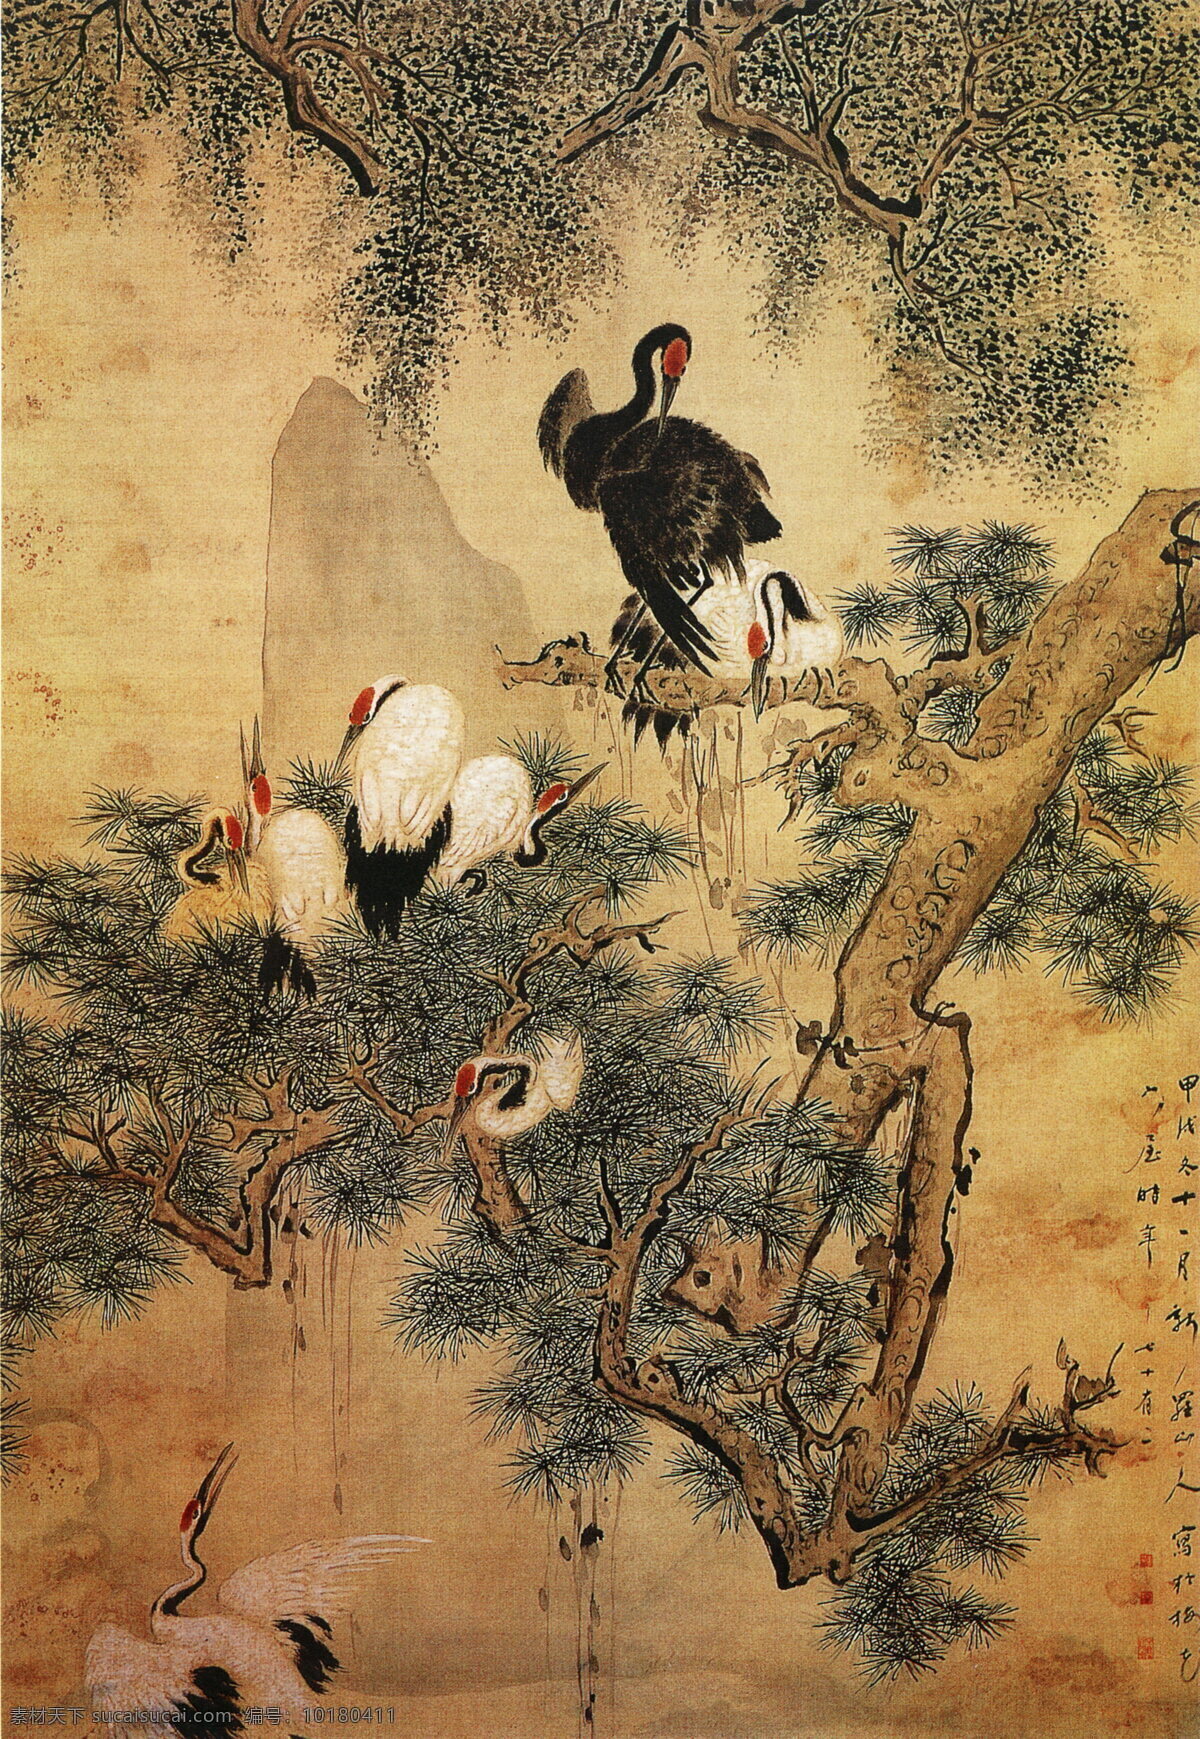 松鹤图 花鸟画 中国 古画 中国古画 设计素材 花鸟名画 古典藏画 书画美术 棕色